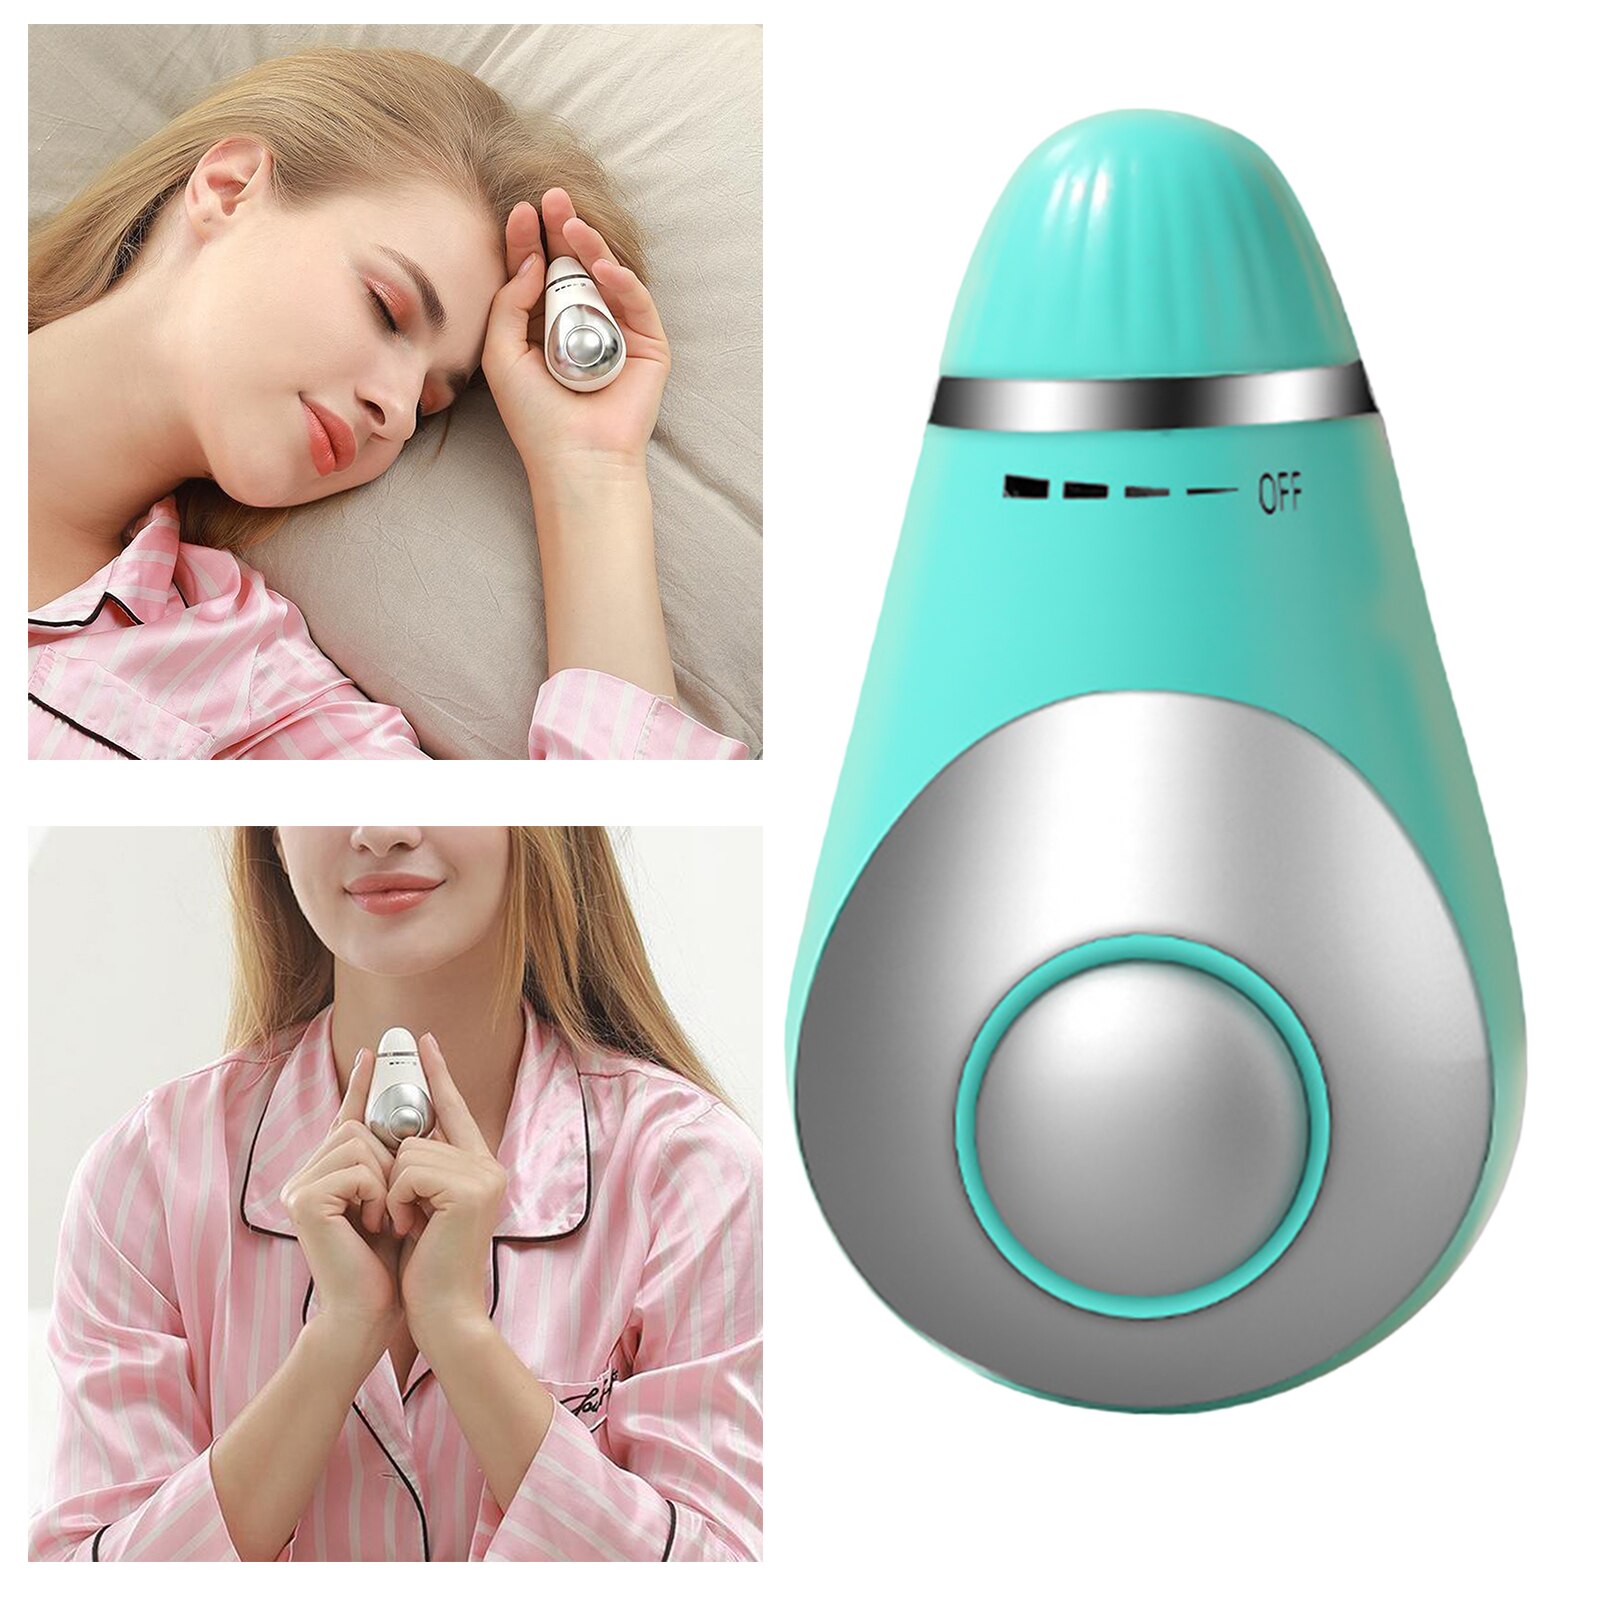 Bærbart håndholdt søvnhjælpemiddel, mikrostrøm intelligent søvnenhed hurtigt værktøj til søvnhjælp: Blå